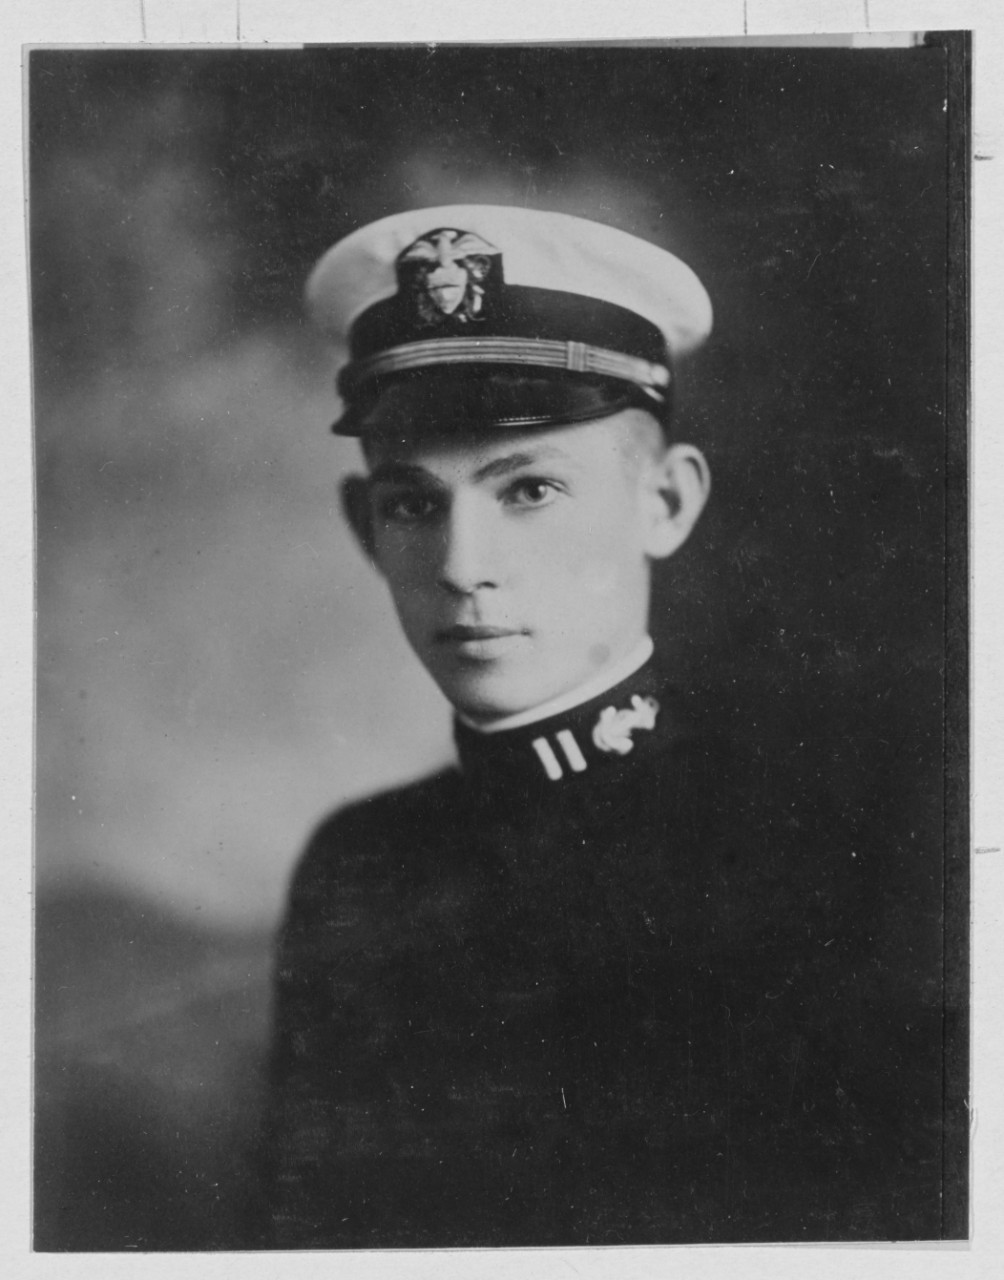 Whitemarsh, Ross, P. Lt. U. S. N. (Navy Cross)